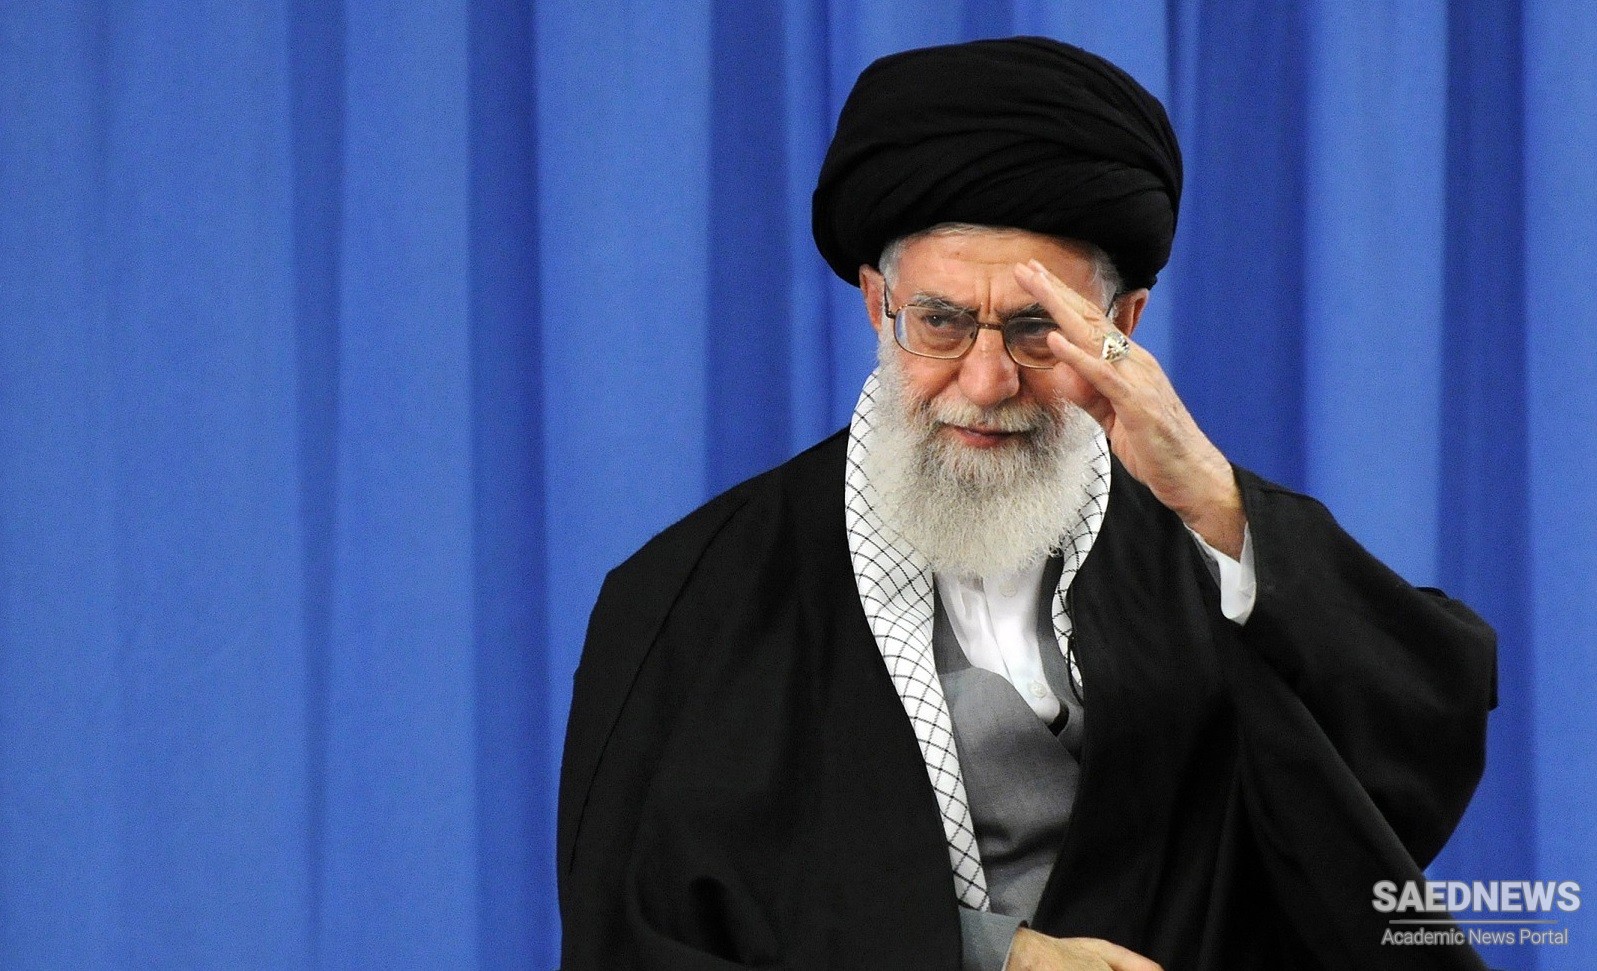 ईरान अपने JCPOA में लौटने के लिए कदम नहीं उठाएगा जब तक अमेरिका व्यवहार में प्रतिबंधों को हटा नहीं देता